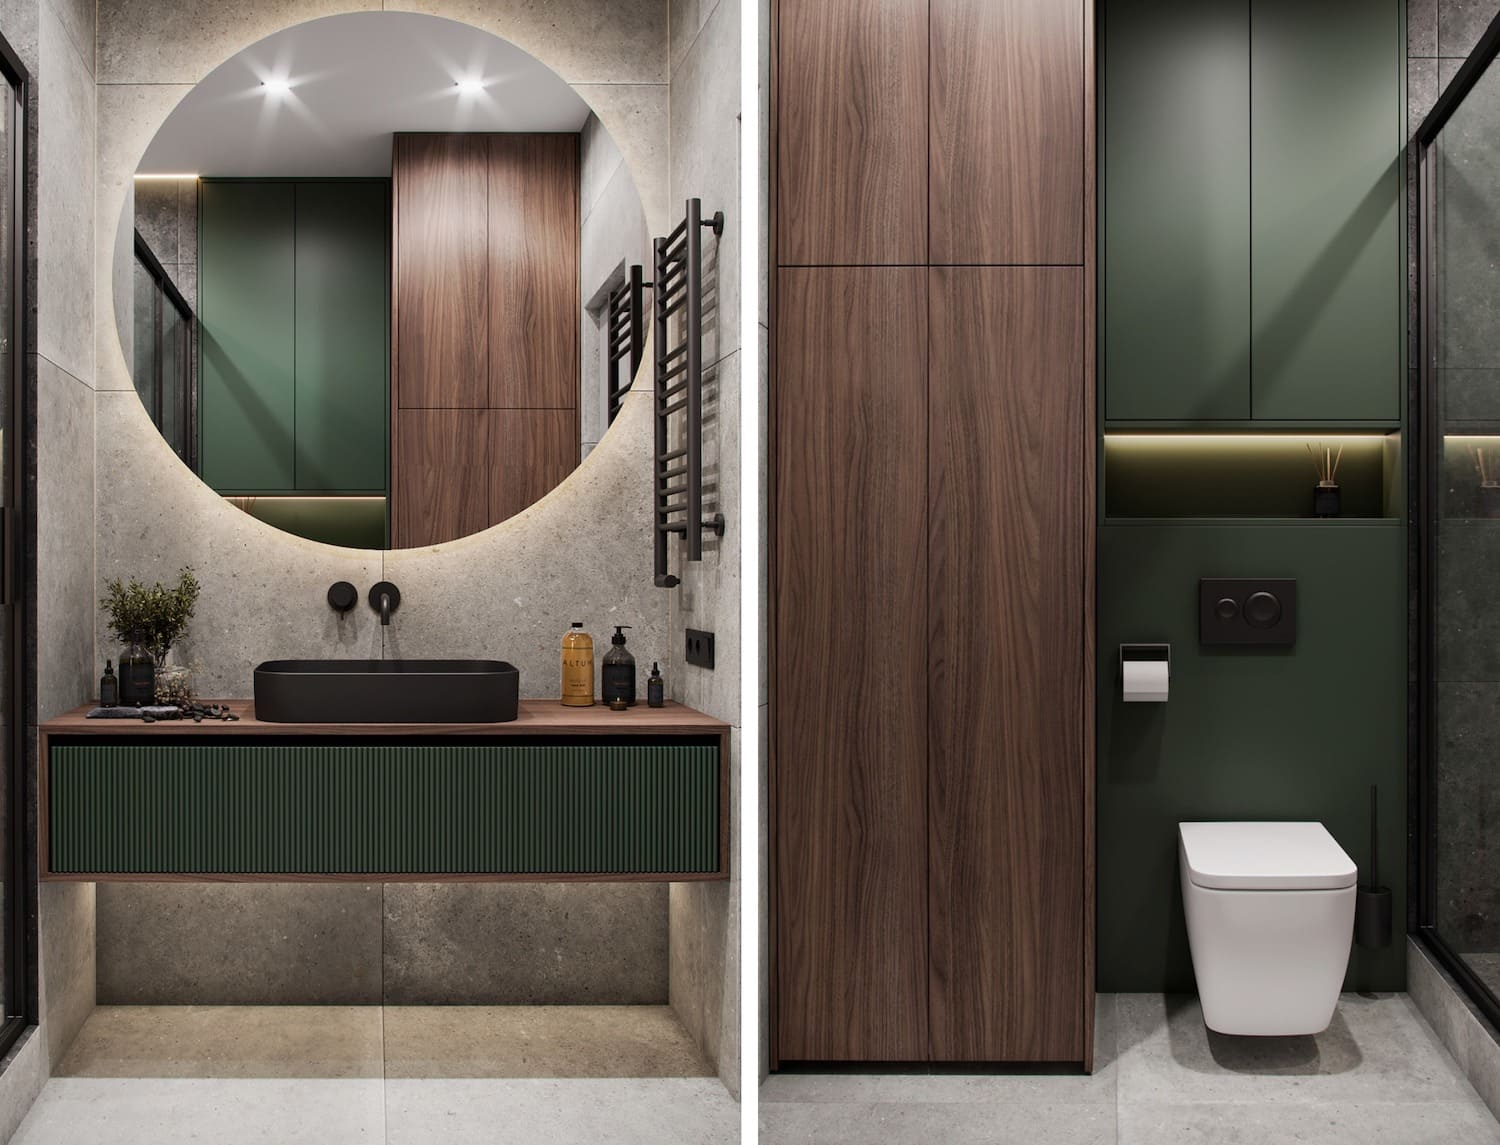 Дизайн ванной комнаты 5 кв м — планировка и интерьер